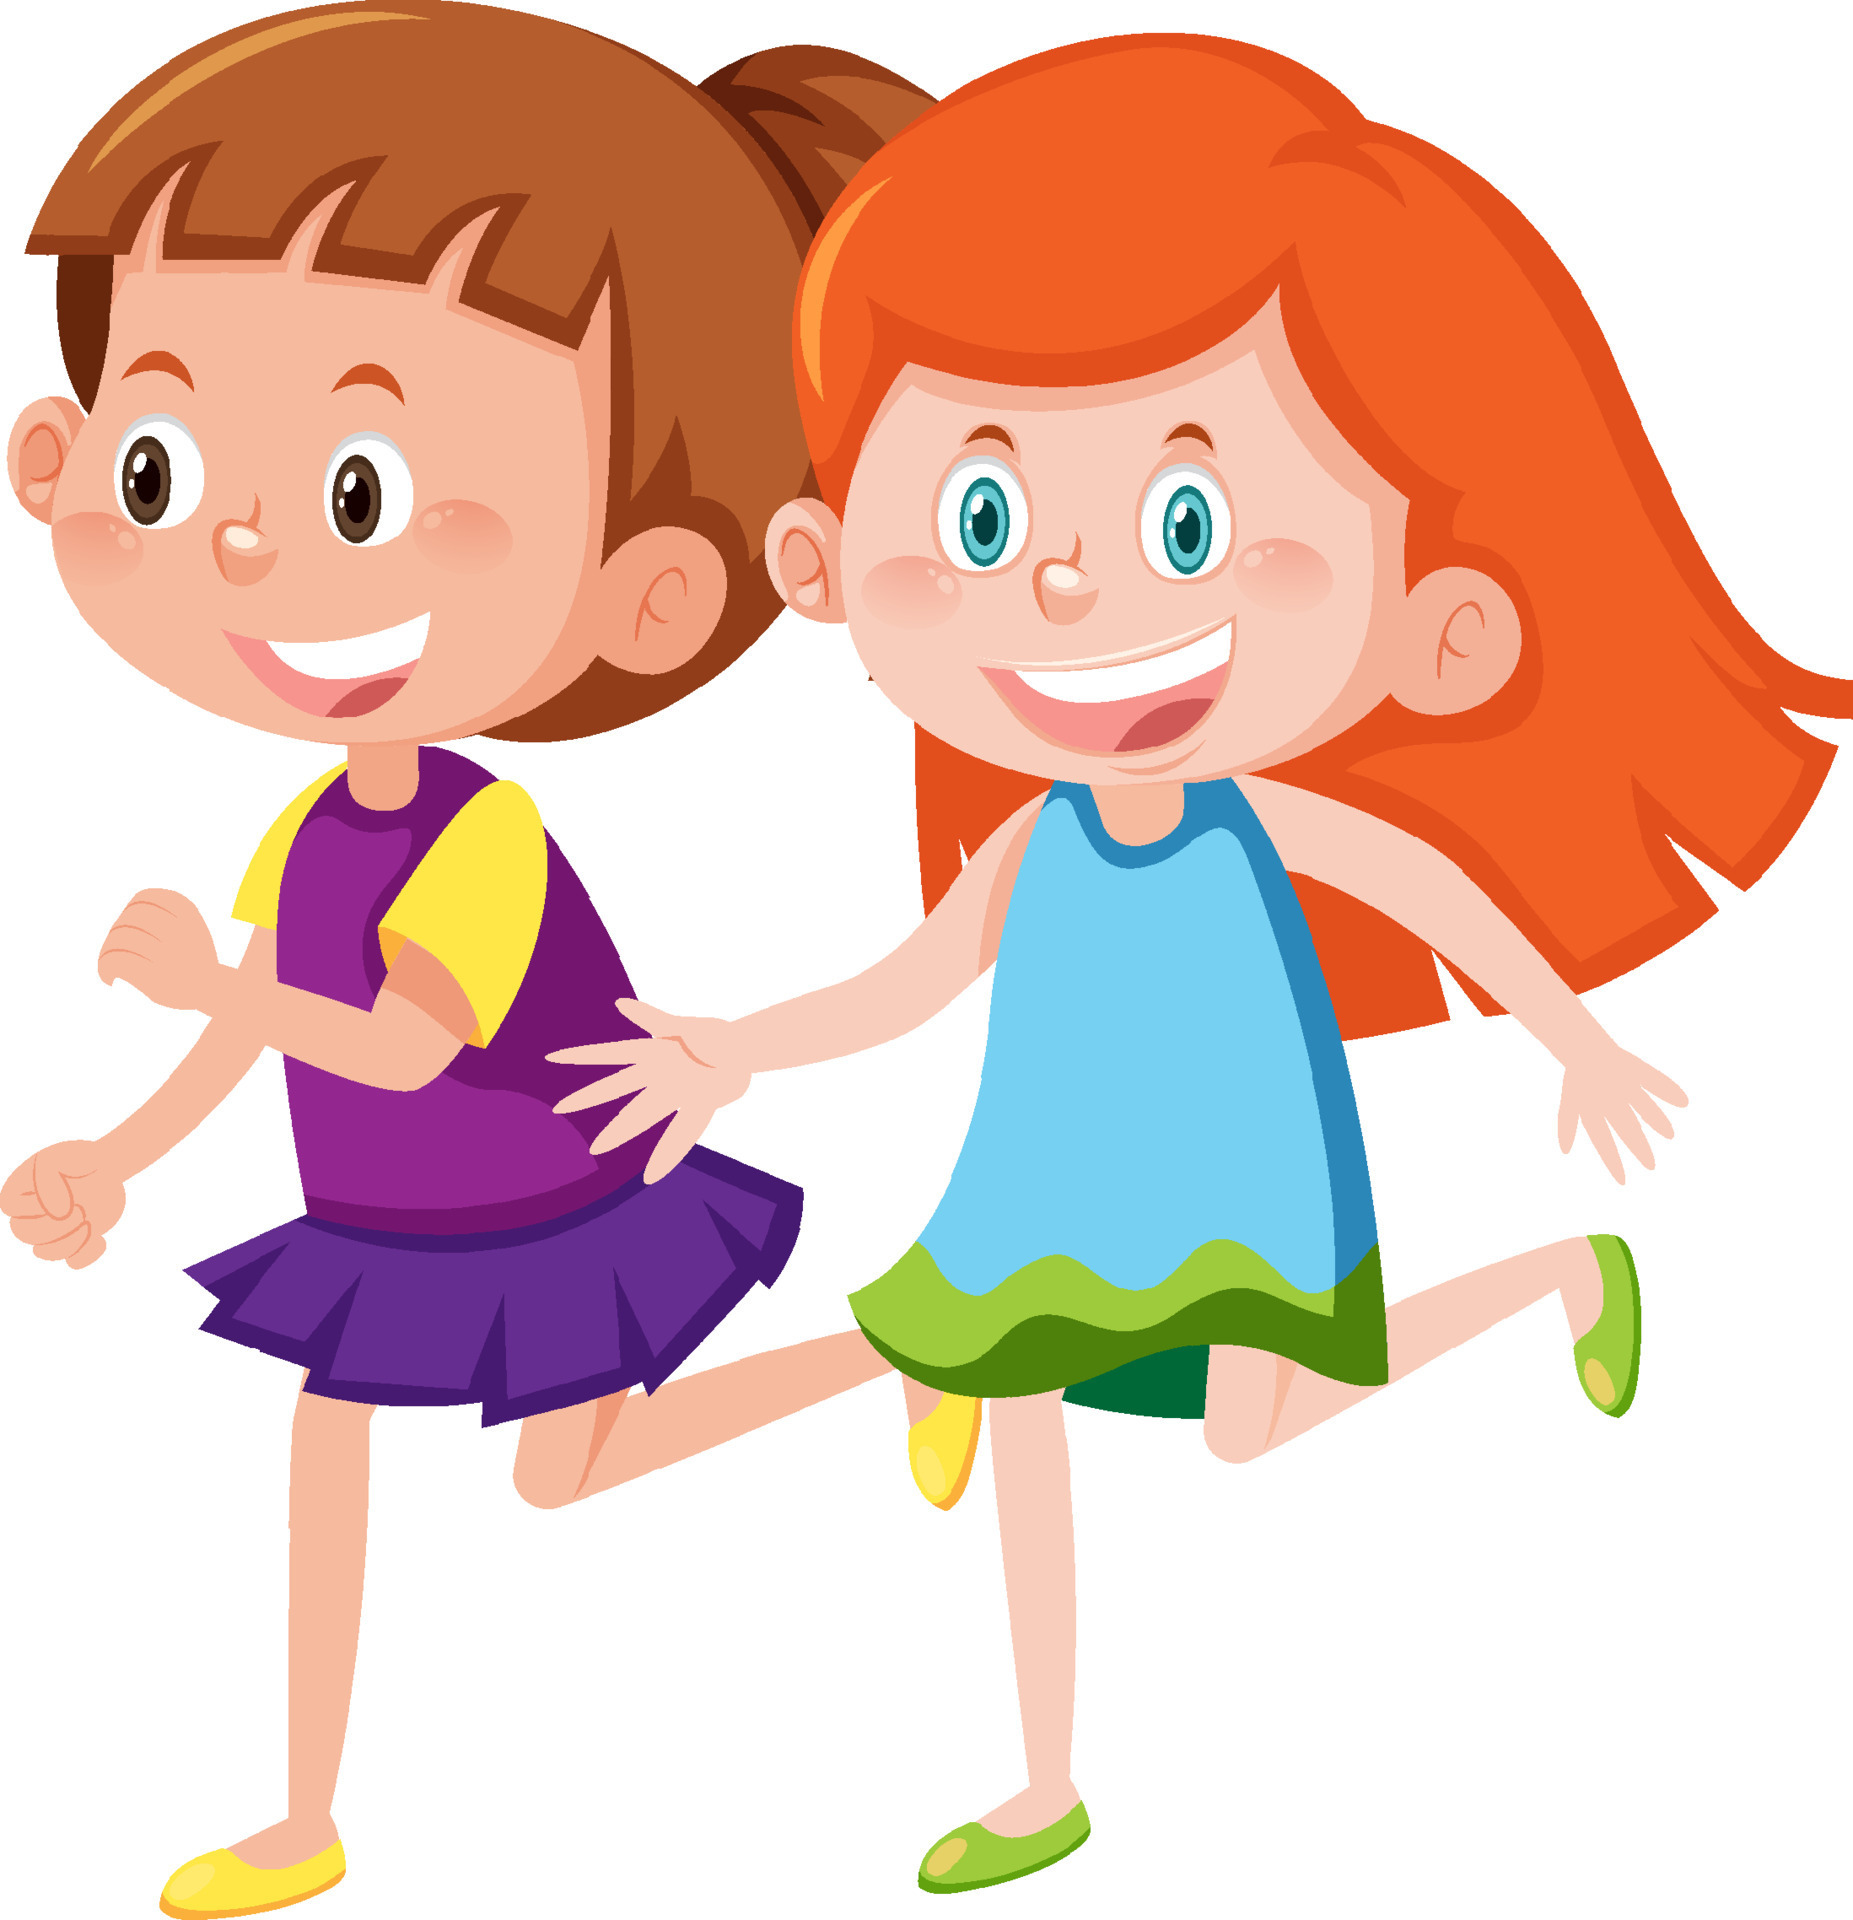 Two happy girls cartoon character 8191060 Vector Art at Vecteezy